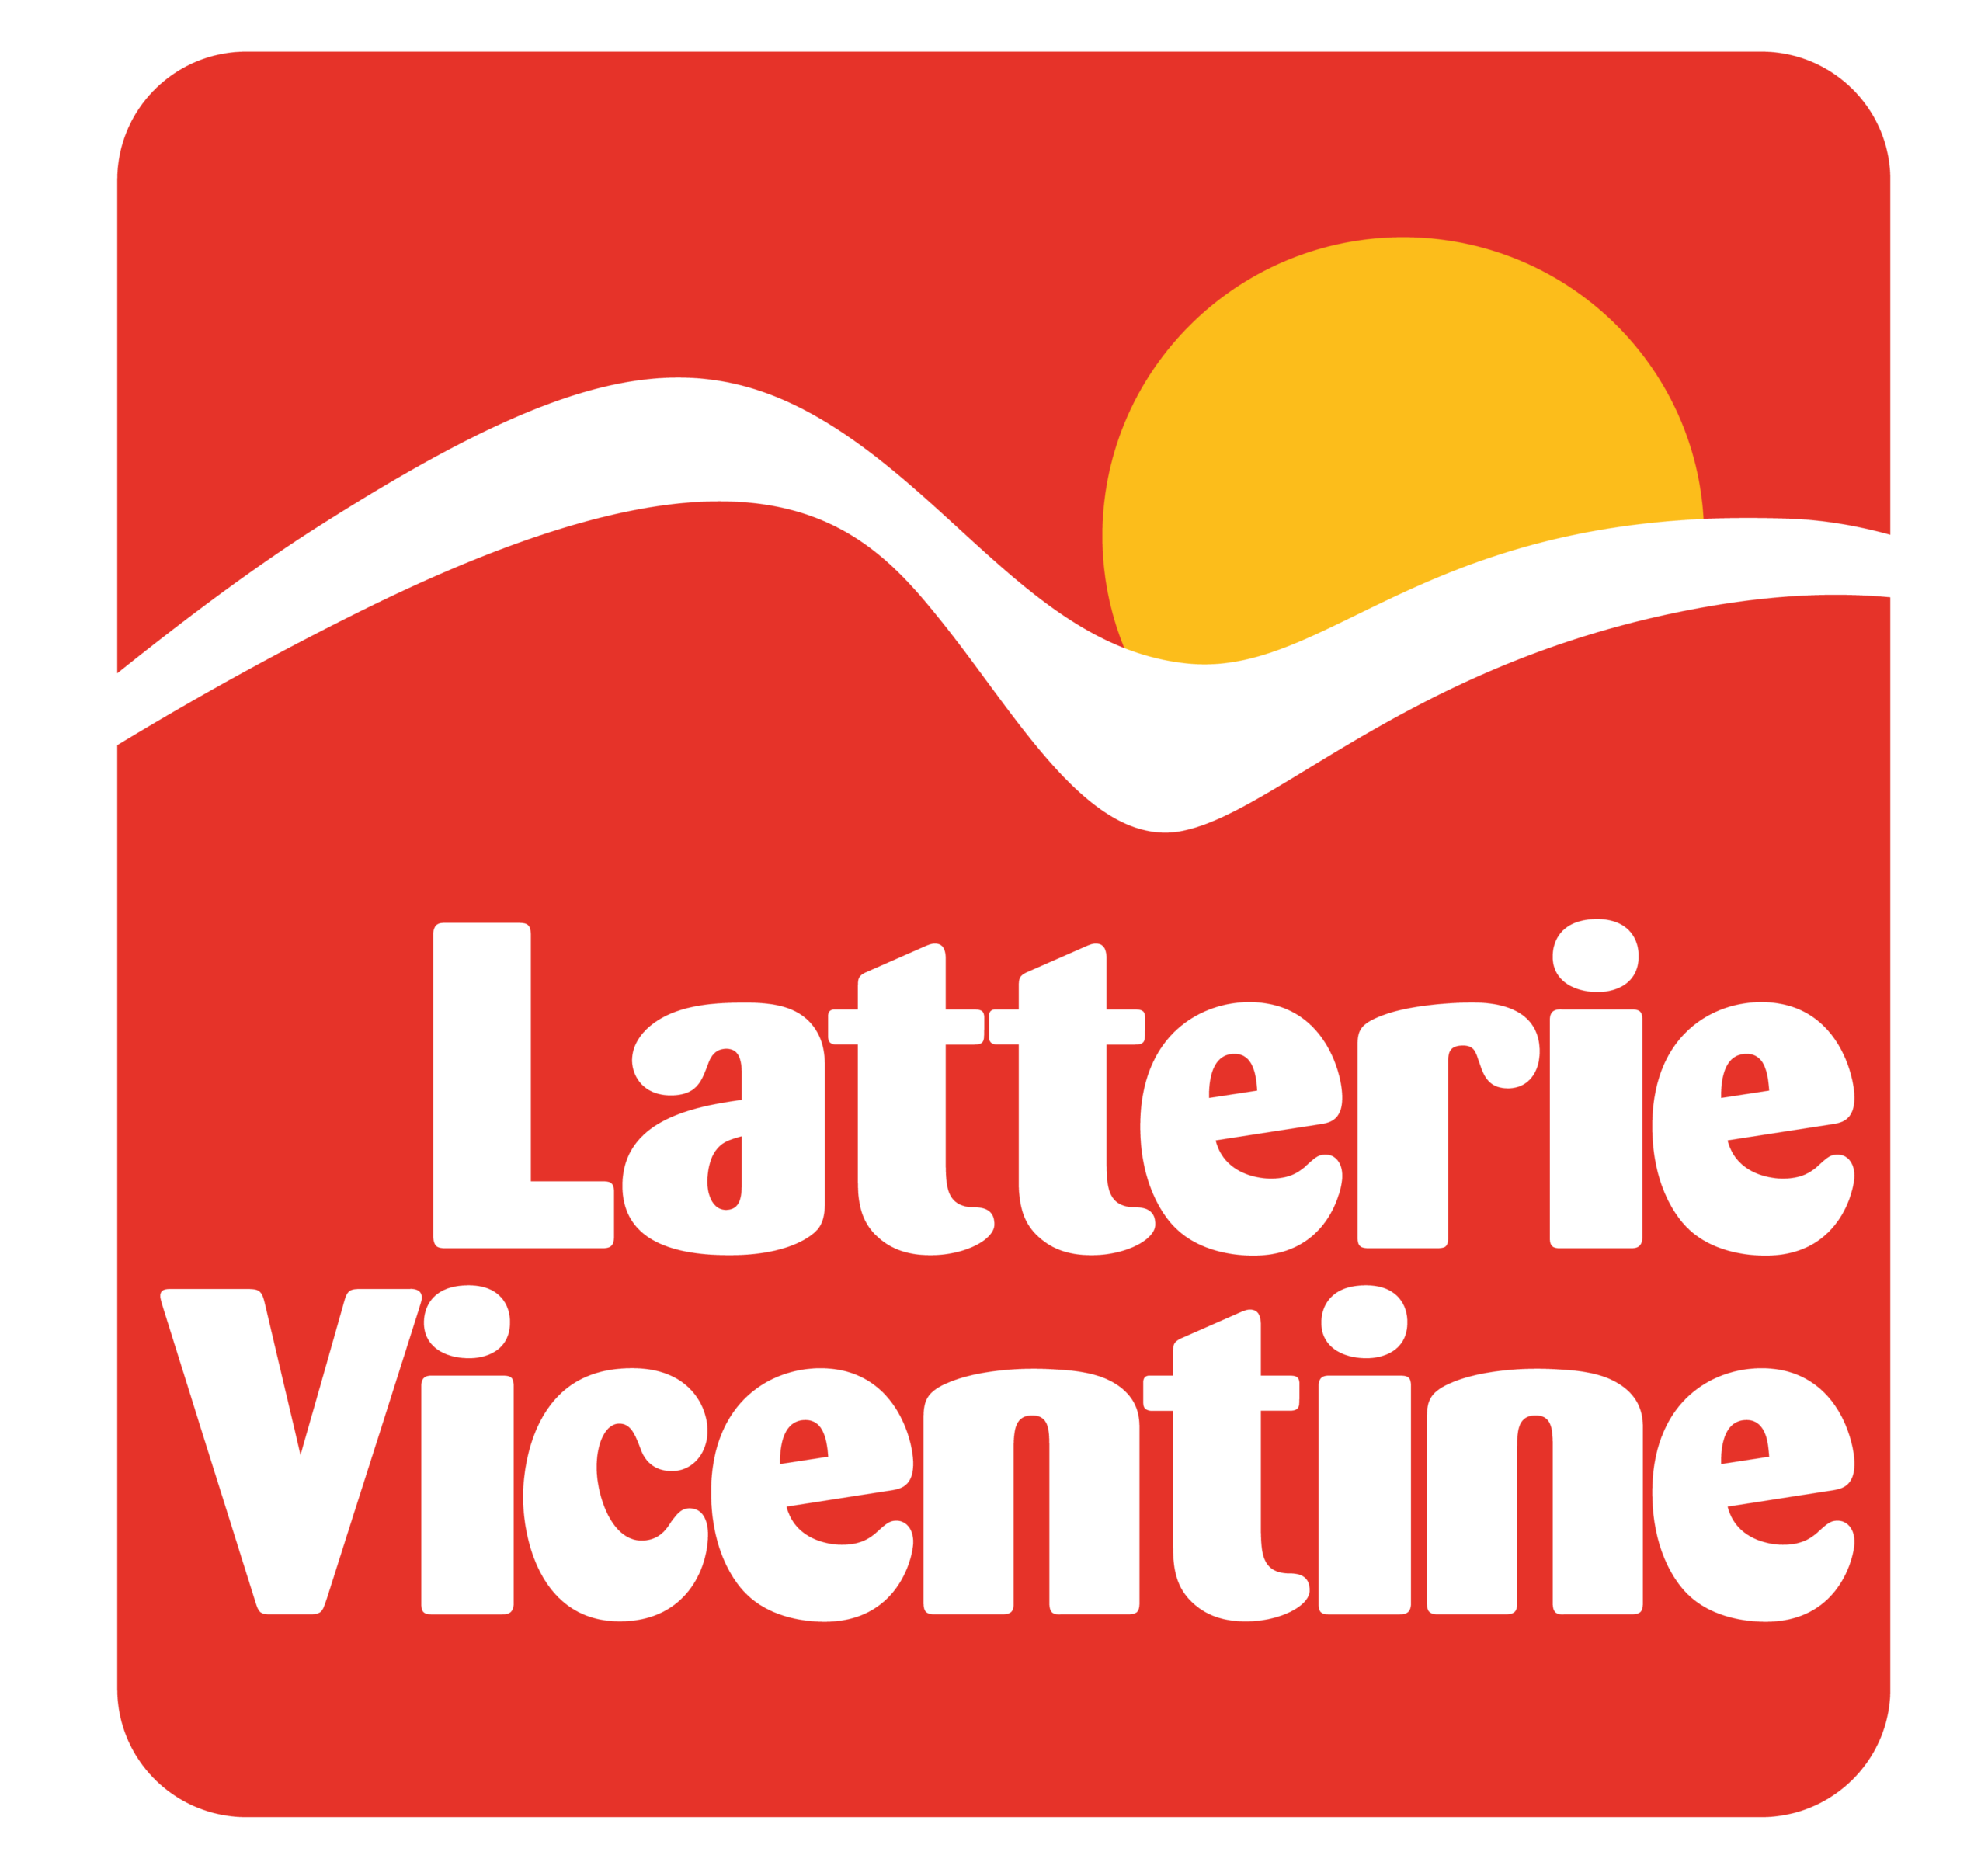 Latterie Vicentine Shop